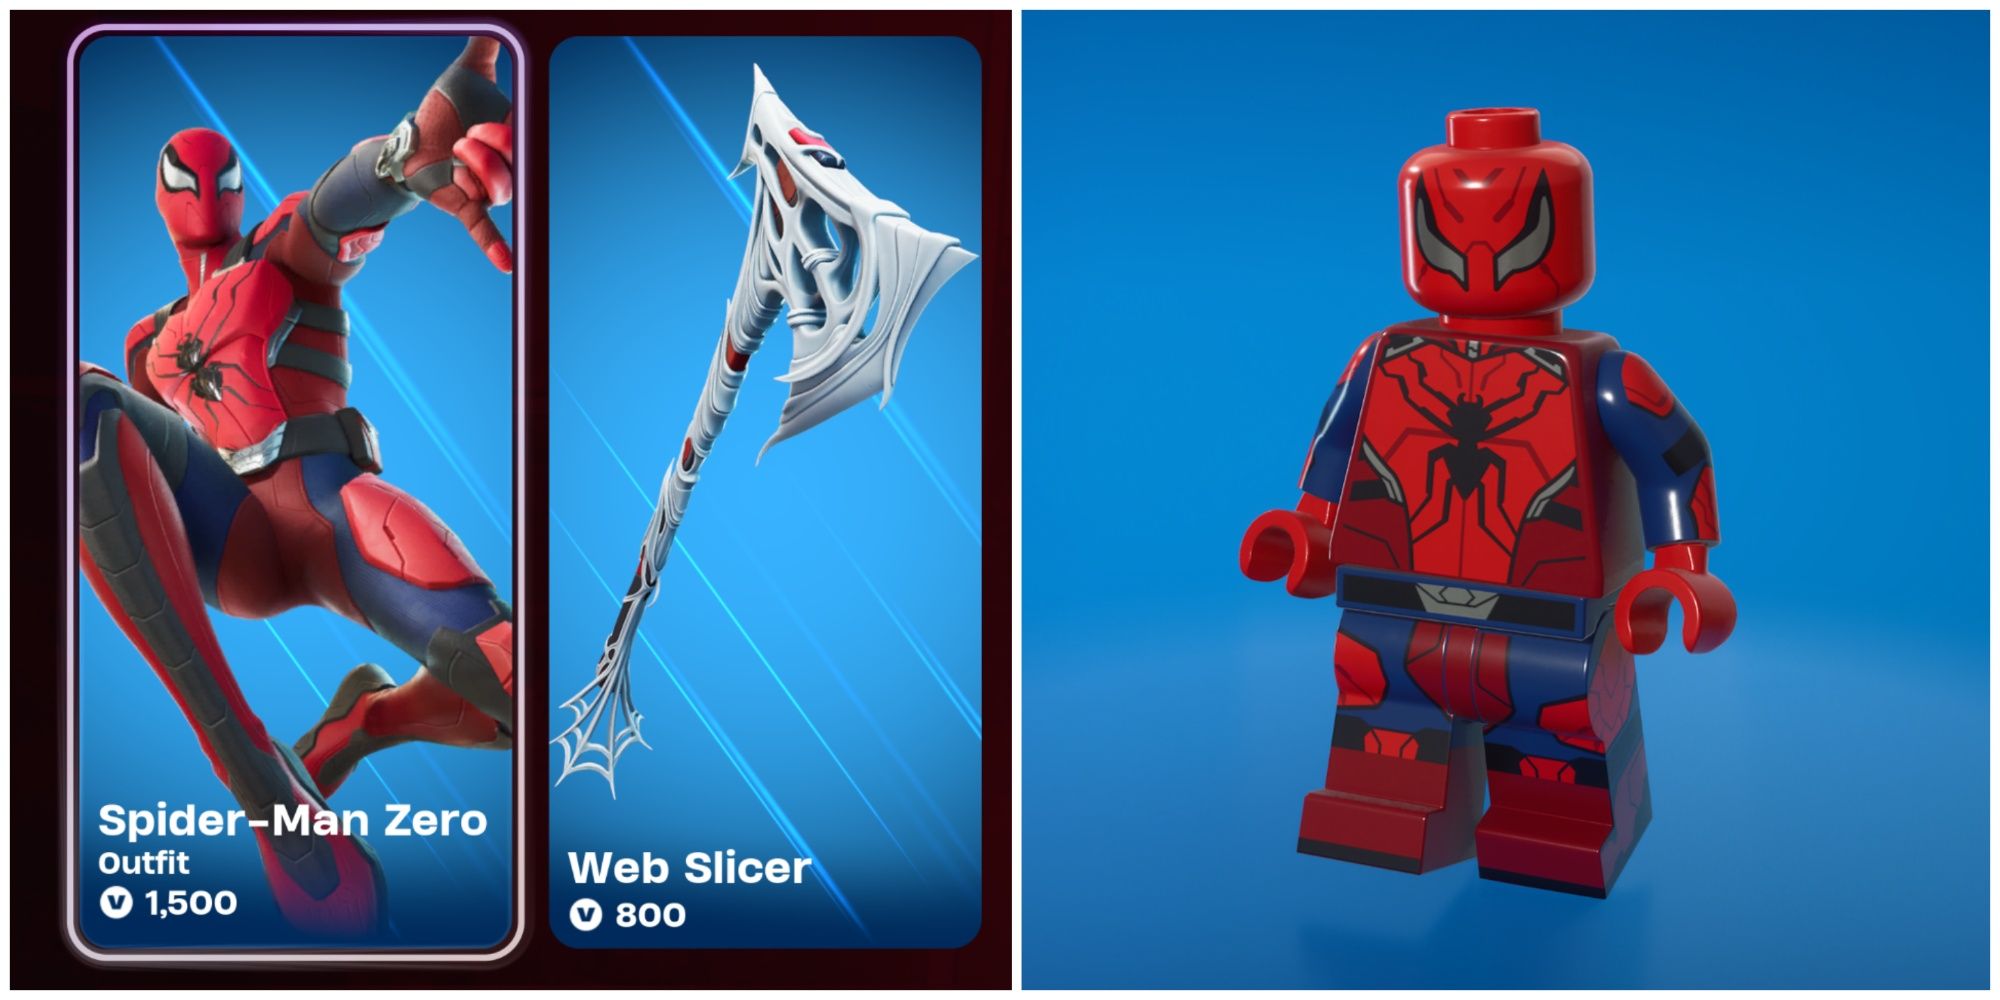 spider man zero war set and lego style